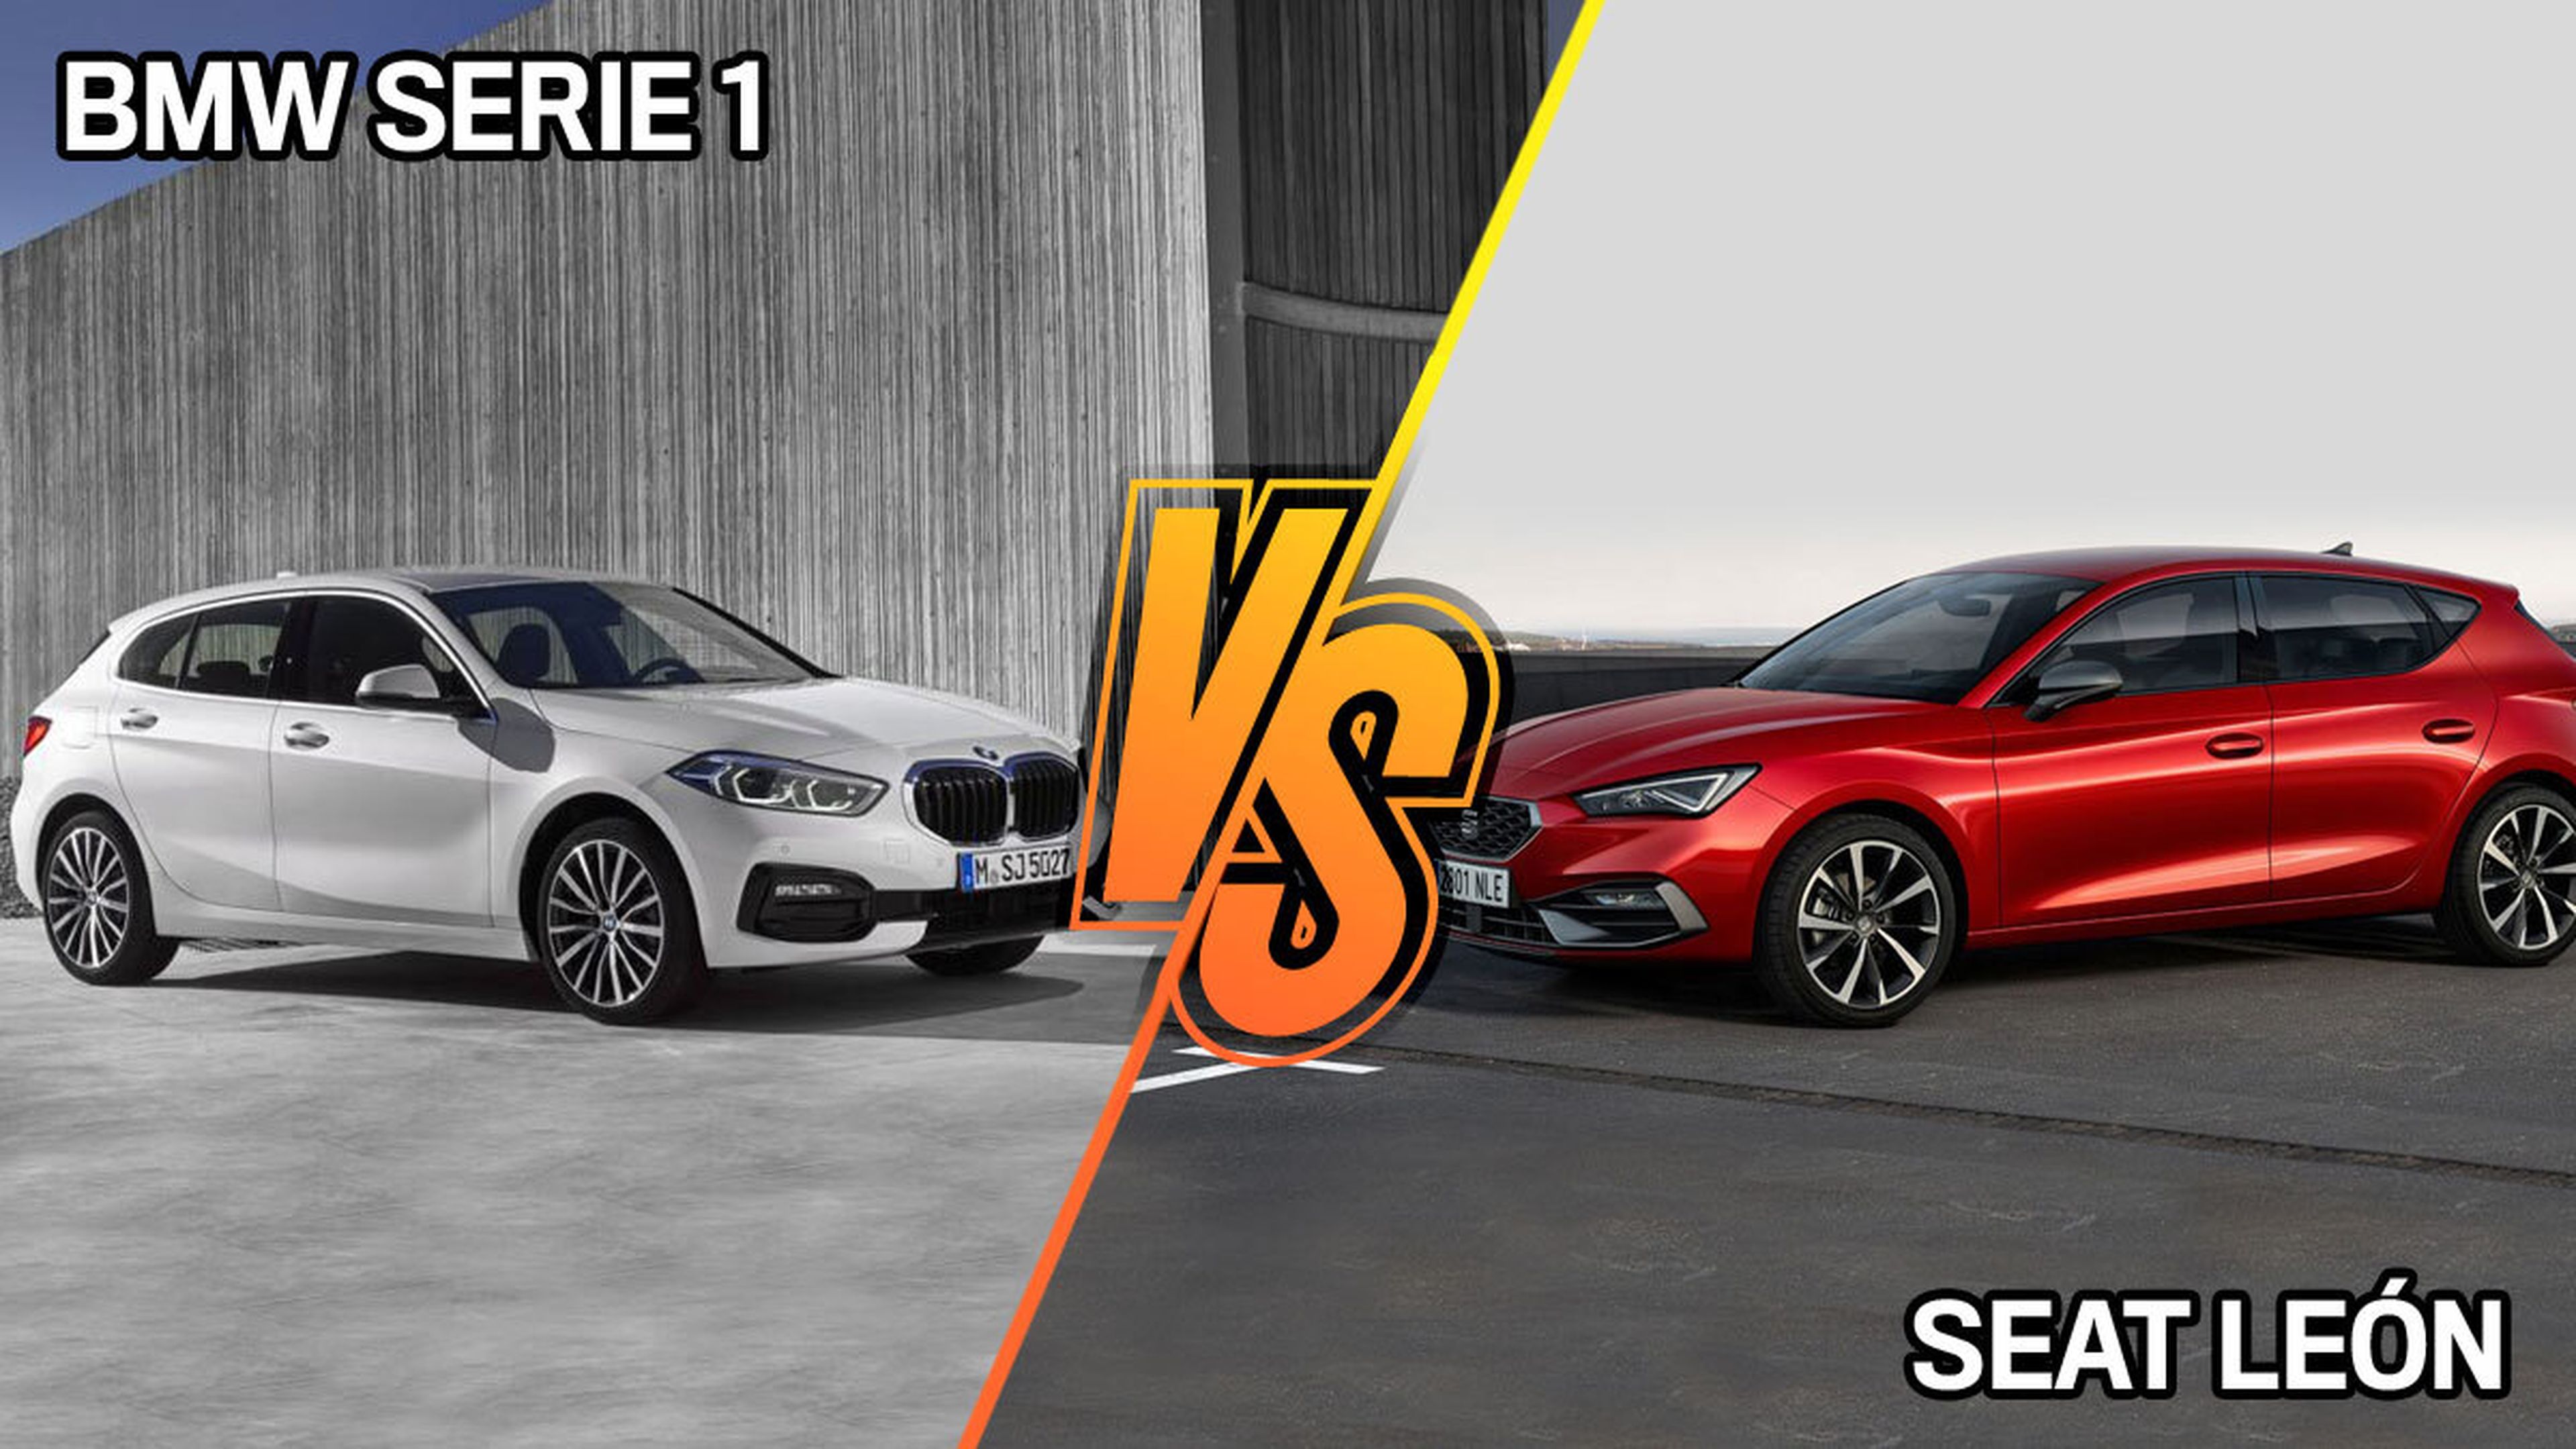 Seat León 2020 o BMW Serie 1: ¿cuál está mejor equipado de serie?